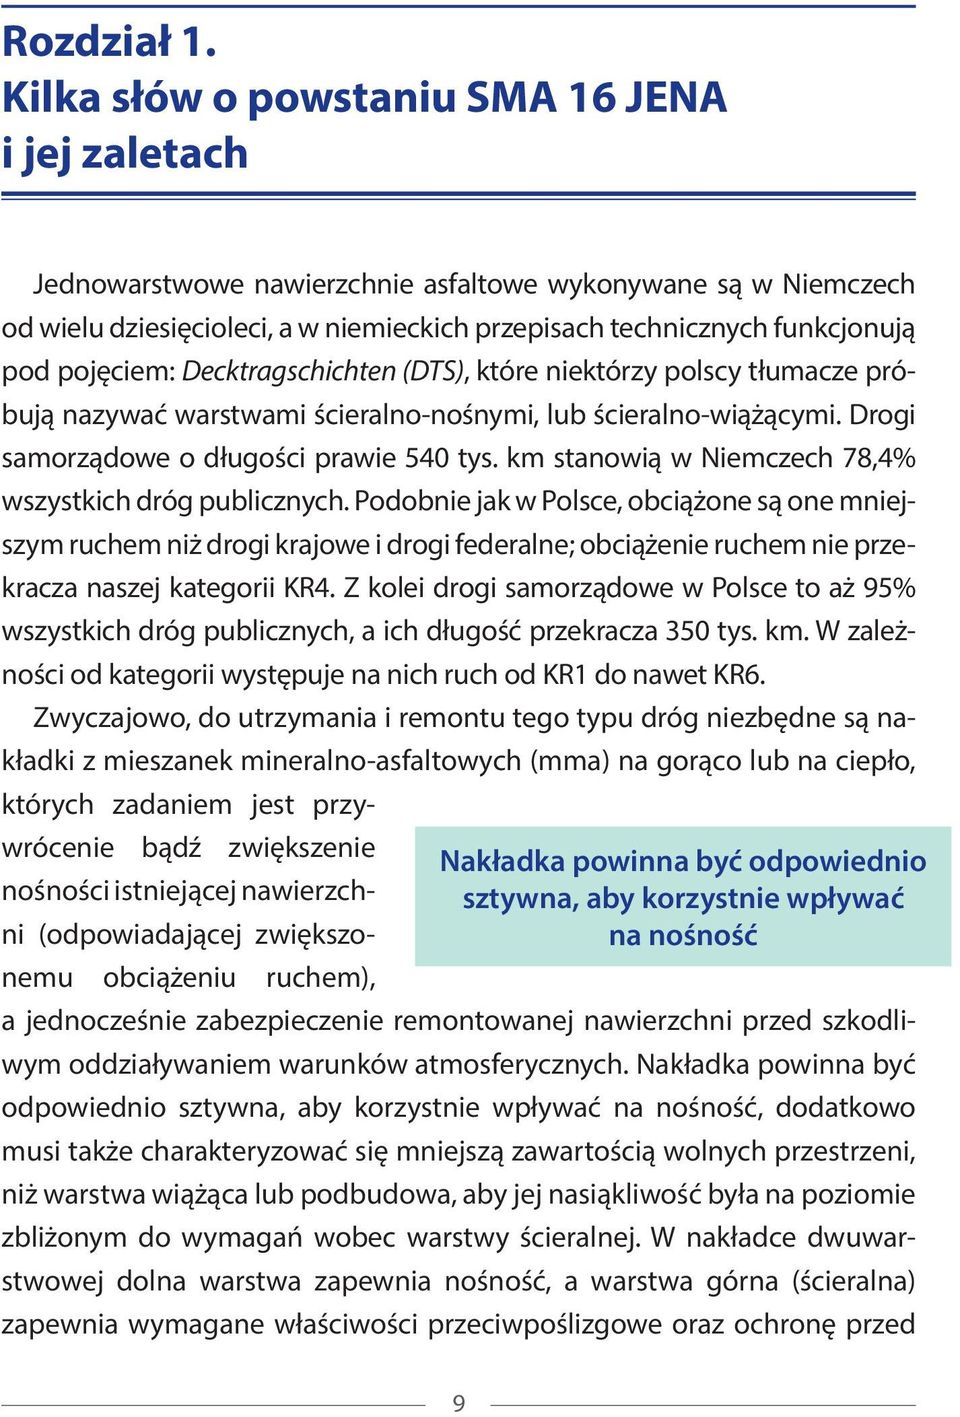 pojęciem: Decktragschichten (DTS), które niektórzy polscy tłumacze próbują nazywać warstwami ścieralno-nośnymi, lub ścieralno-wiążącymi. Drogi samorządowe o długości prawie 540 tys.